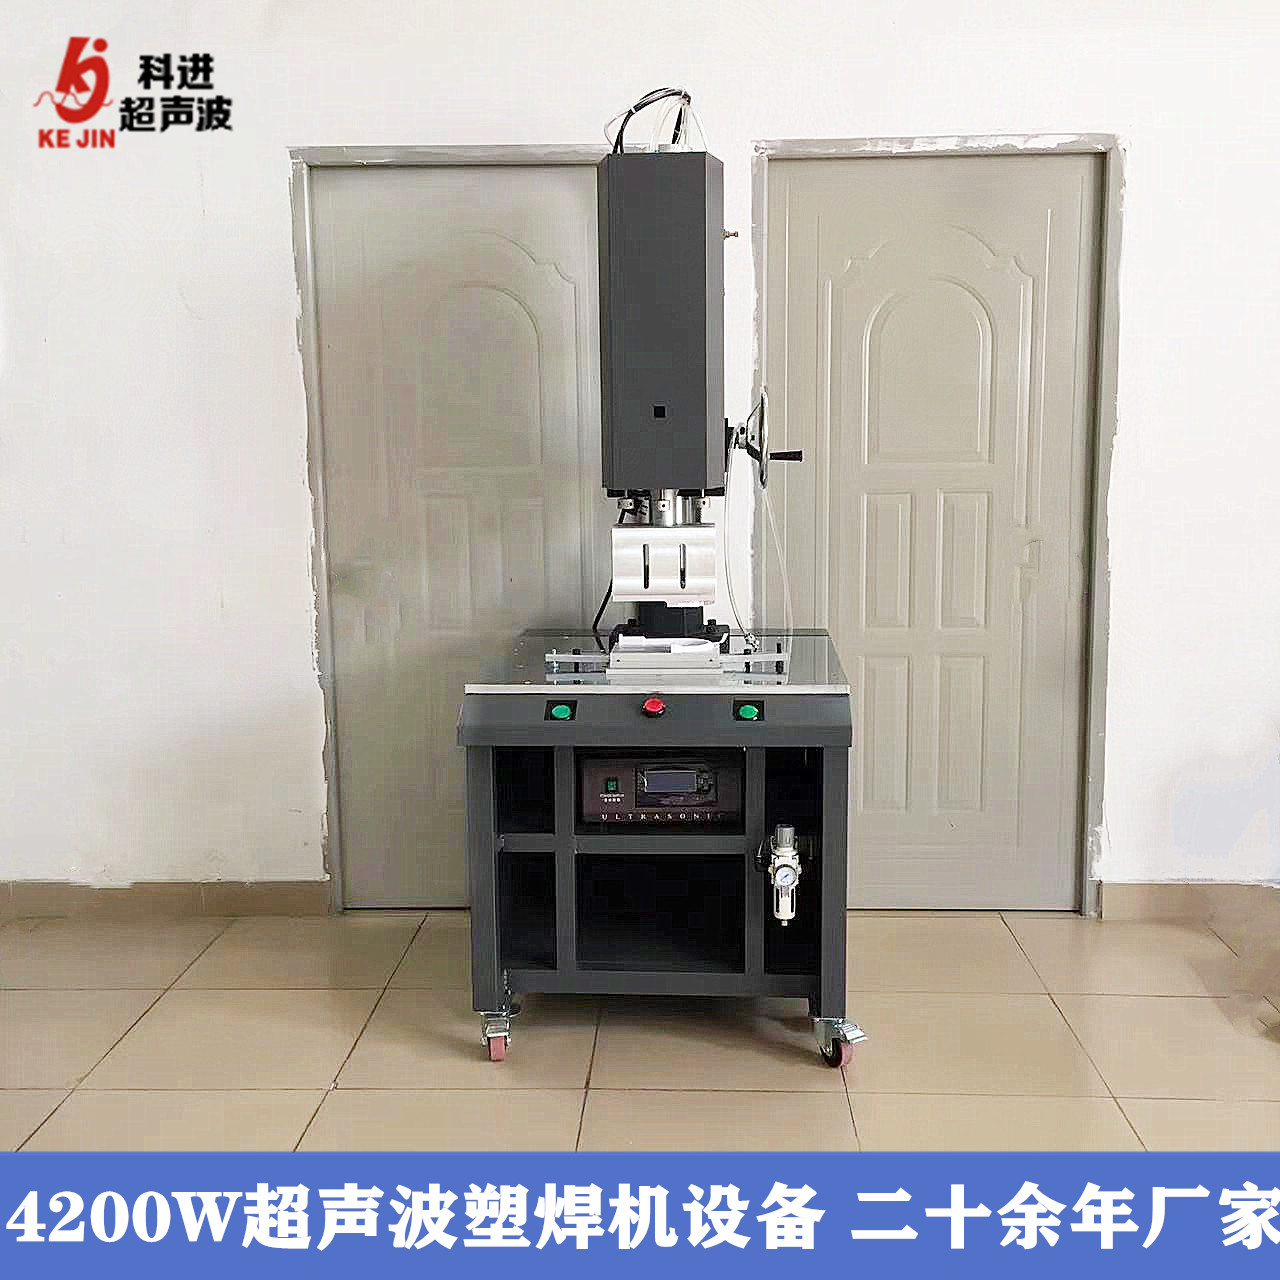 超声波塑焊机大功率15KHZ 4200W 超声波塑料焊接机 超音波熔接机生产厂家